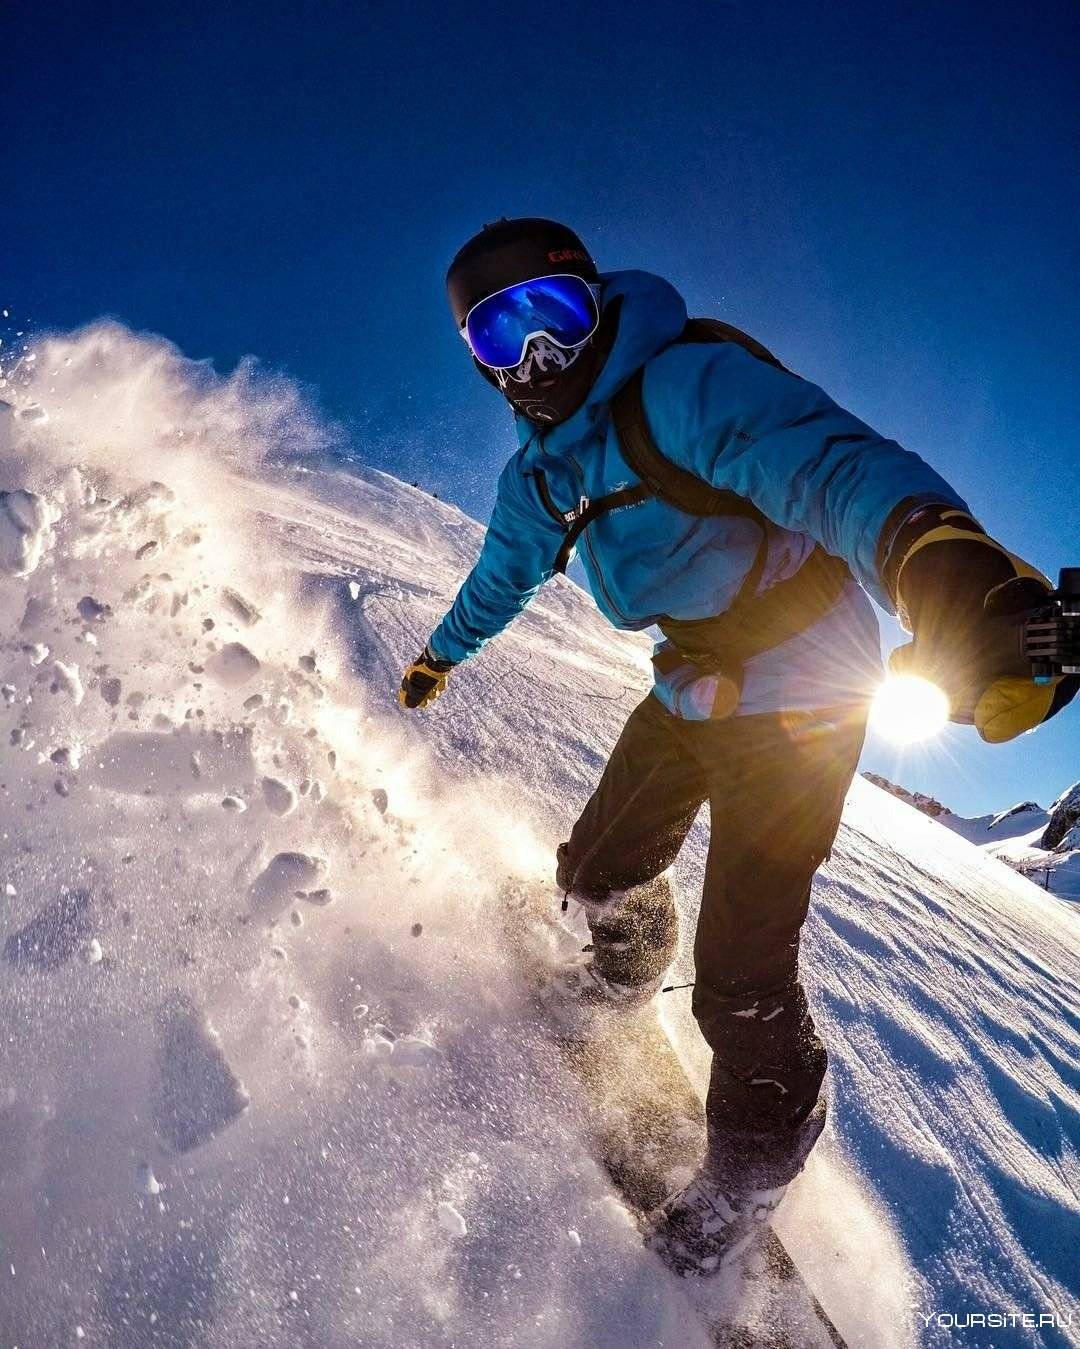 Рейтинг лучших фирм-производителей сноубордов на 2020 год для ценителей настоящего драйва